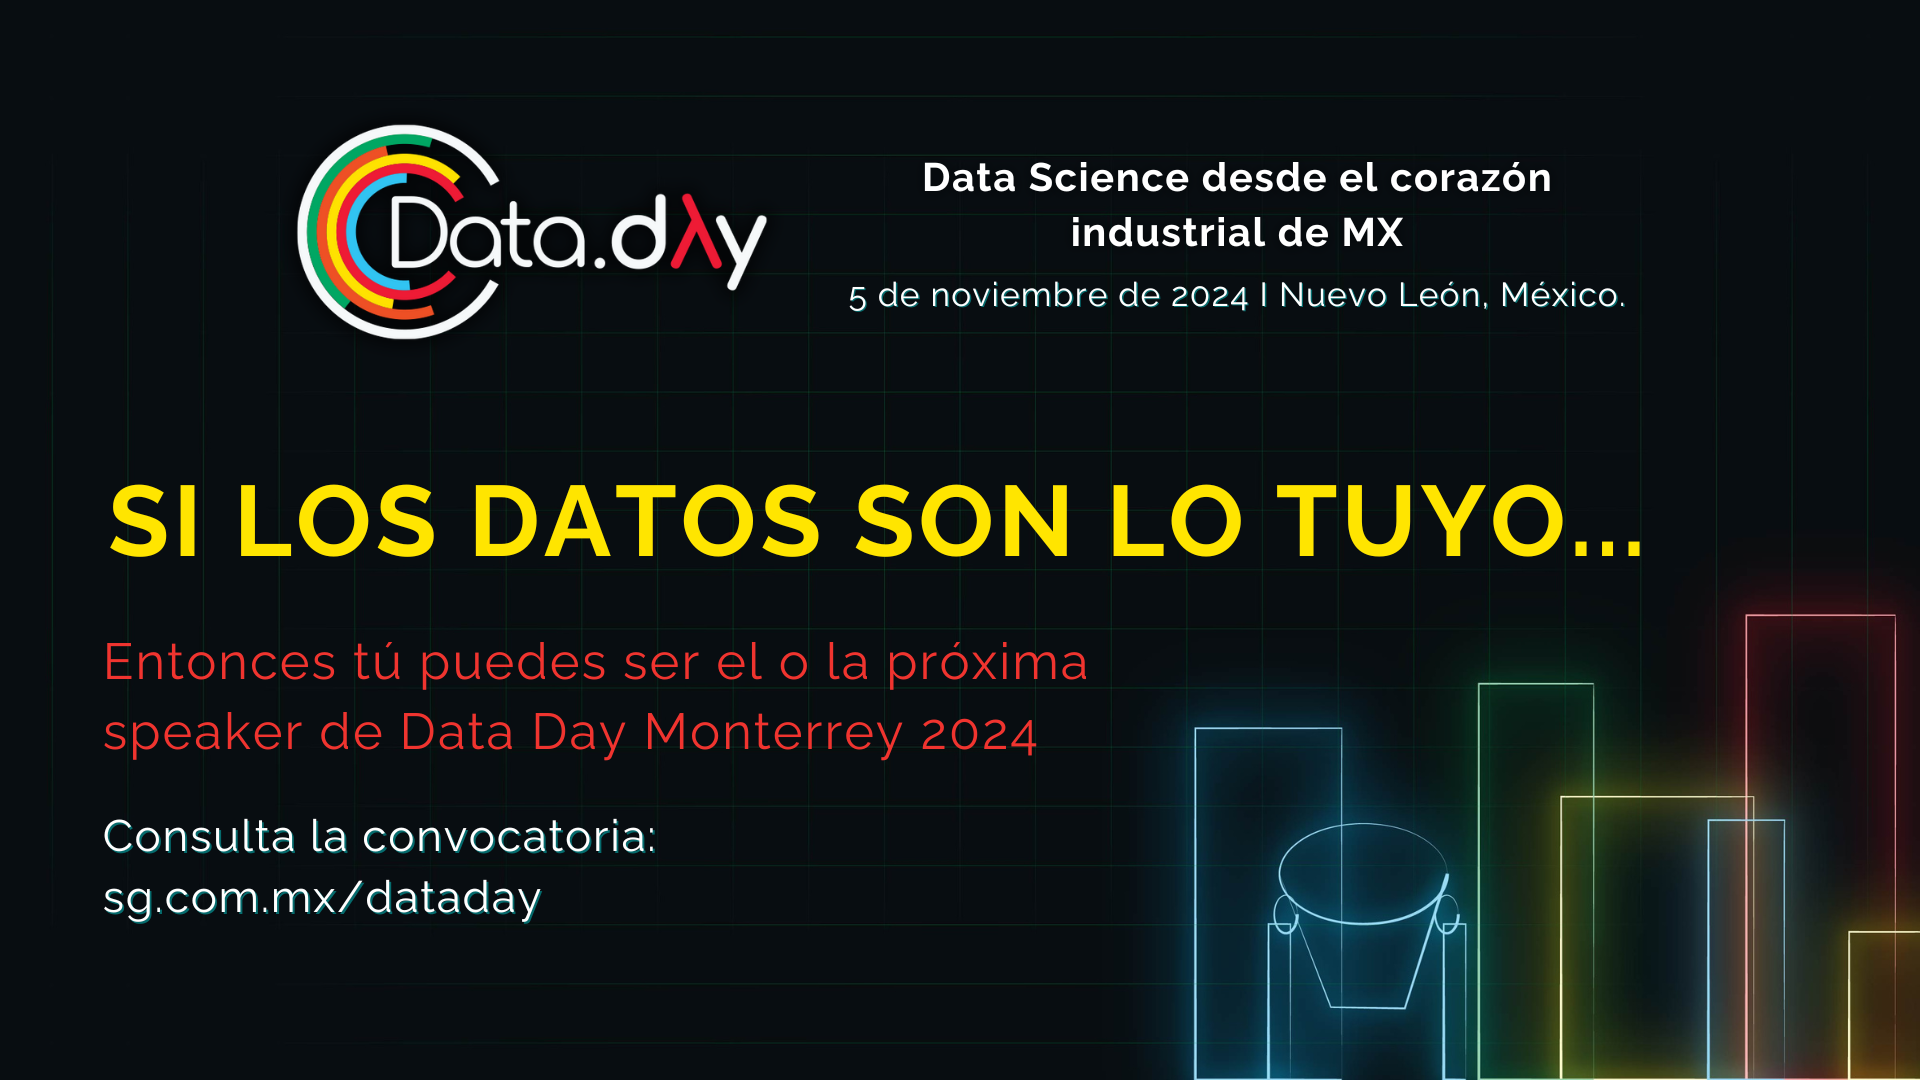 Atención profesionales de datos, ¡Data Day Monterrey 2024 está en marcha y tú puedes ser su protagonista!